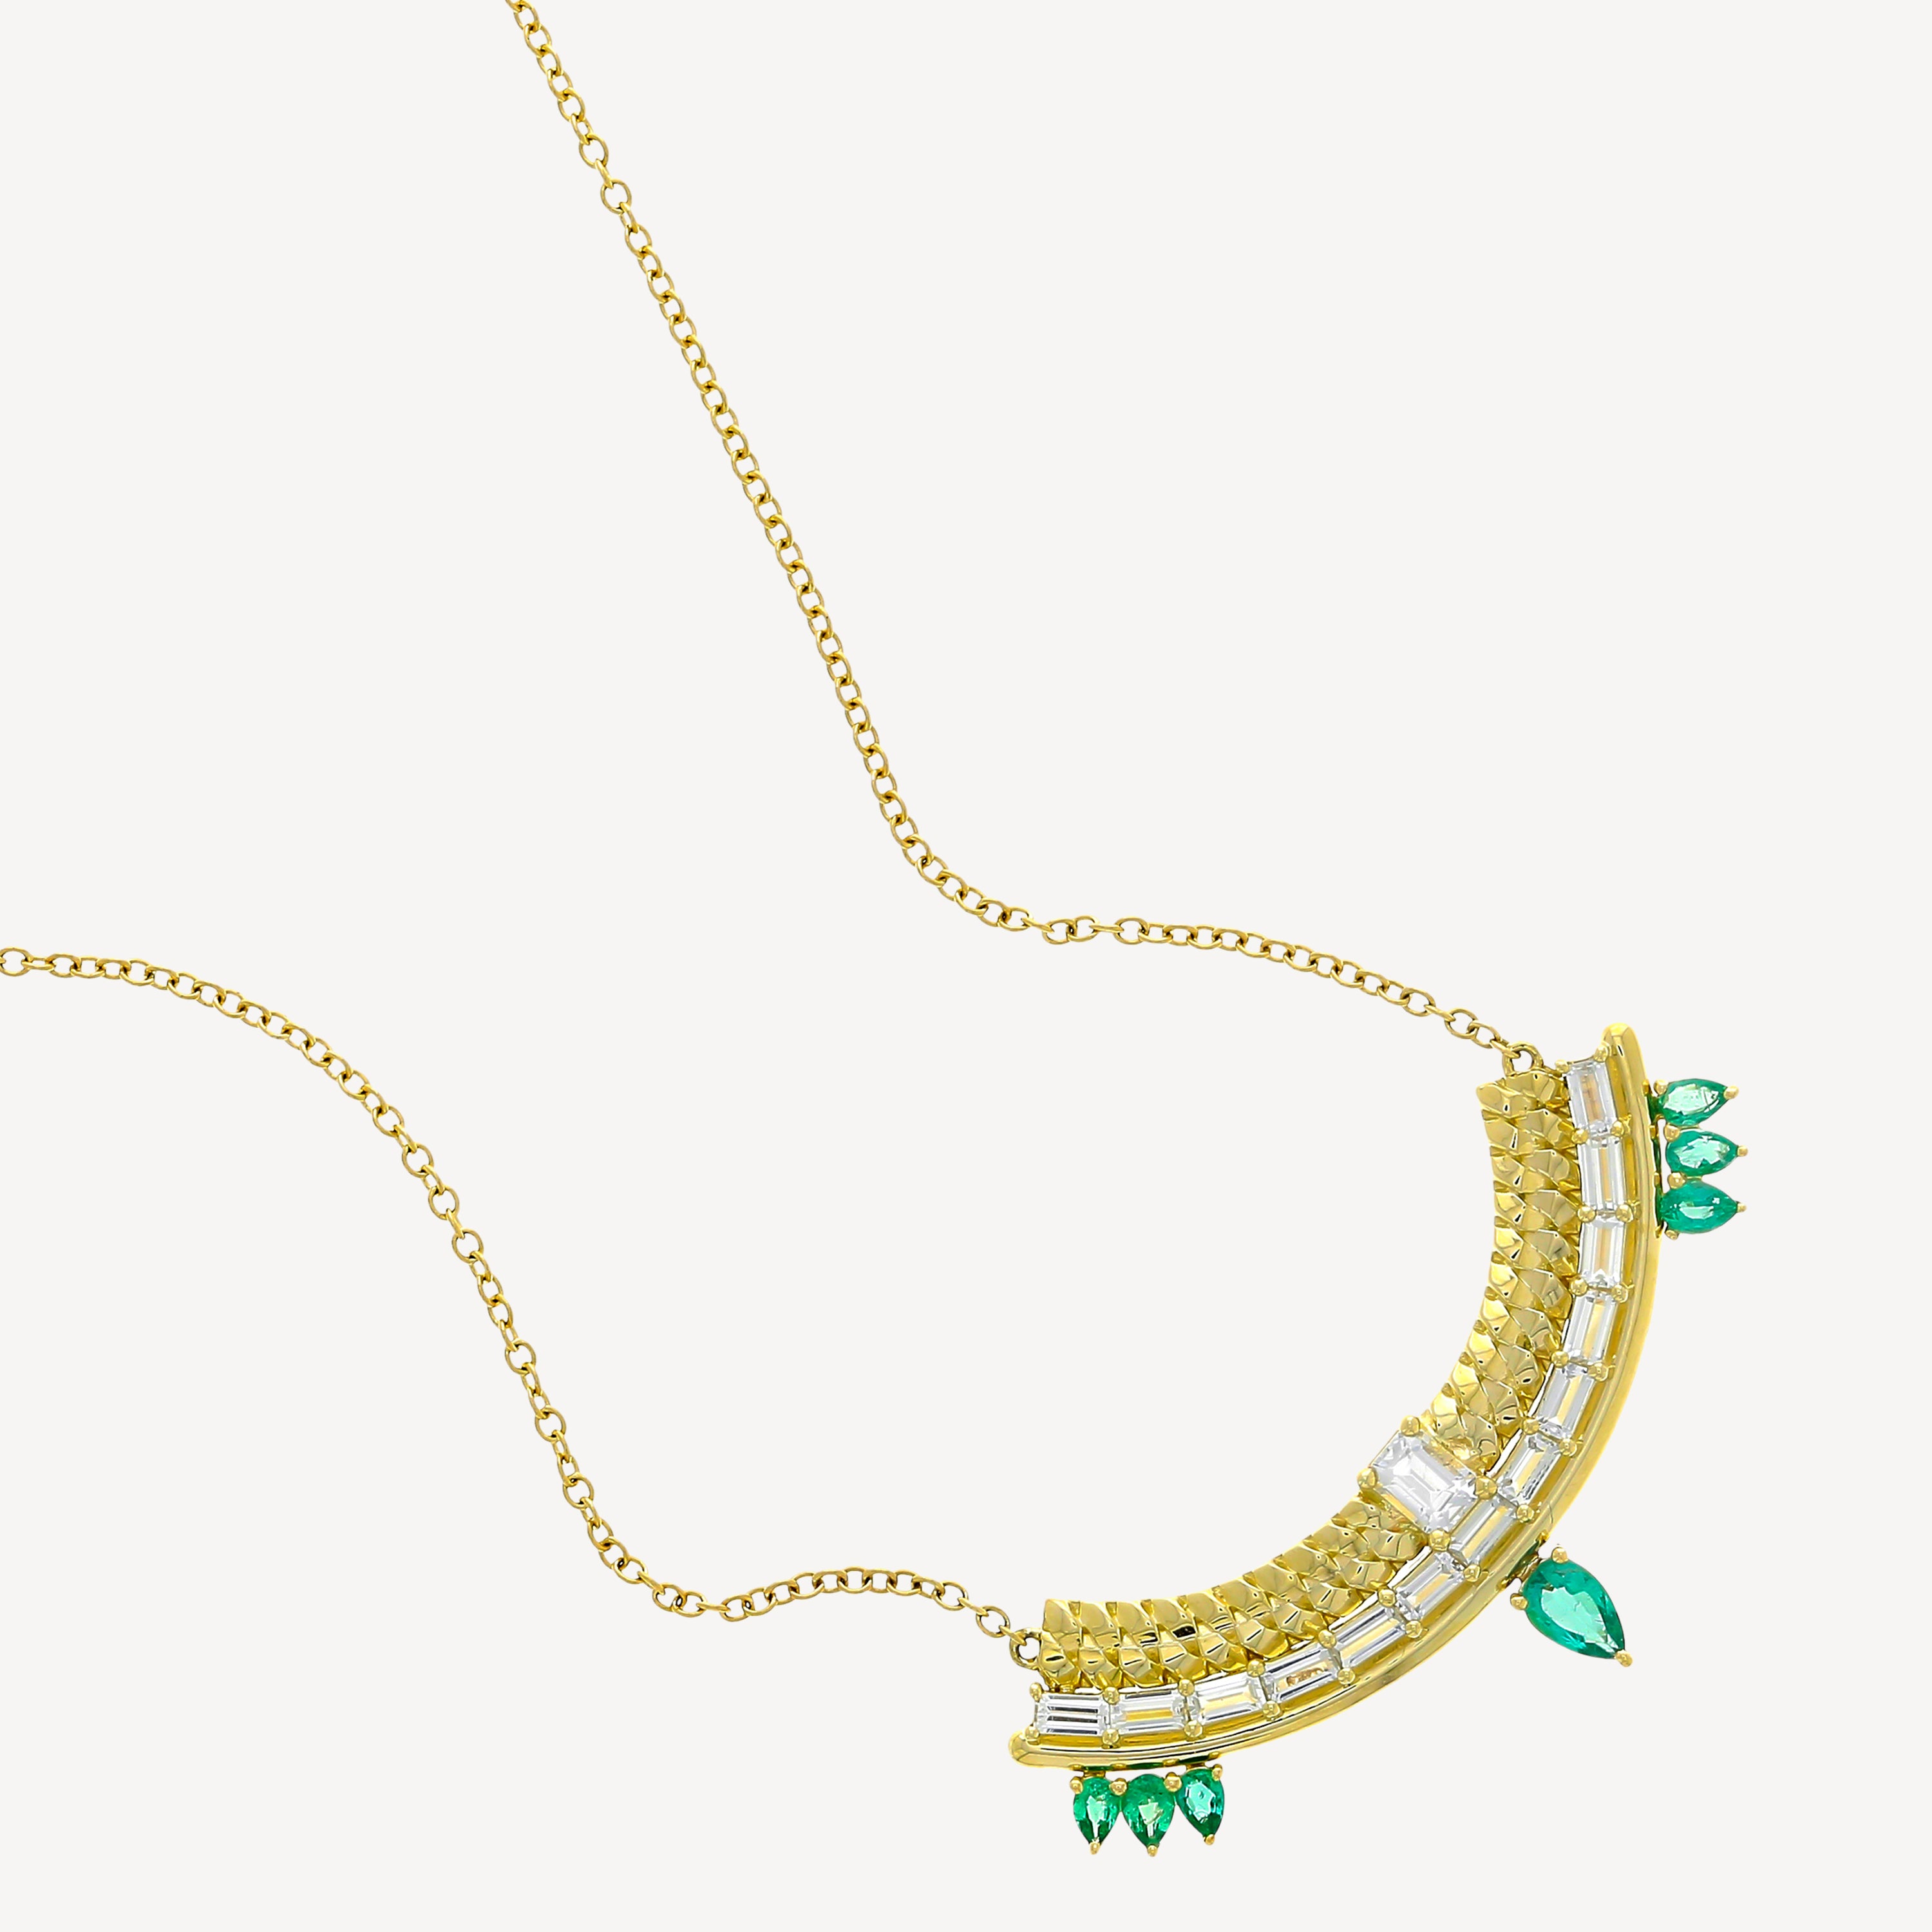 Stapelartige Halskette aus weißem Saphir und Smaragden